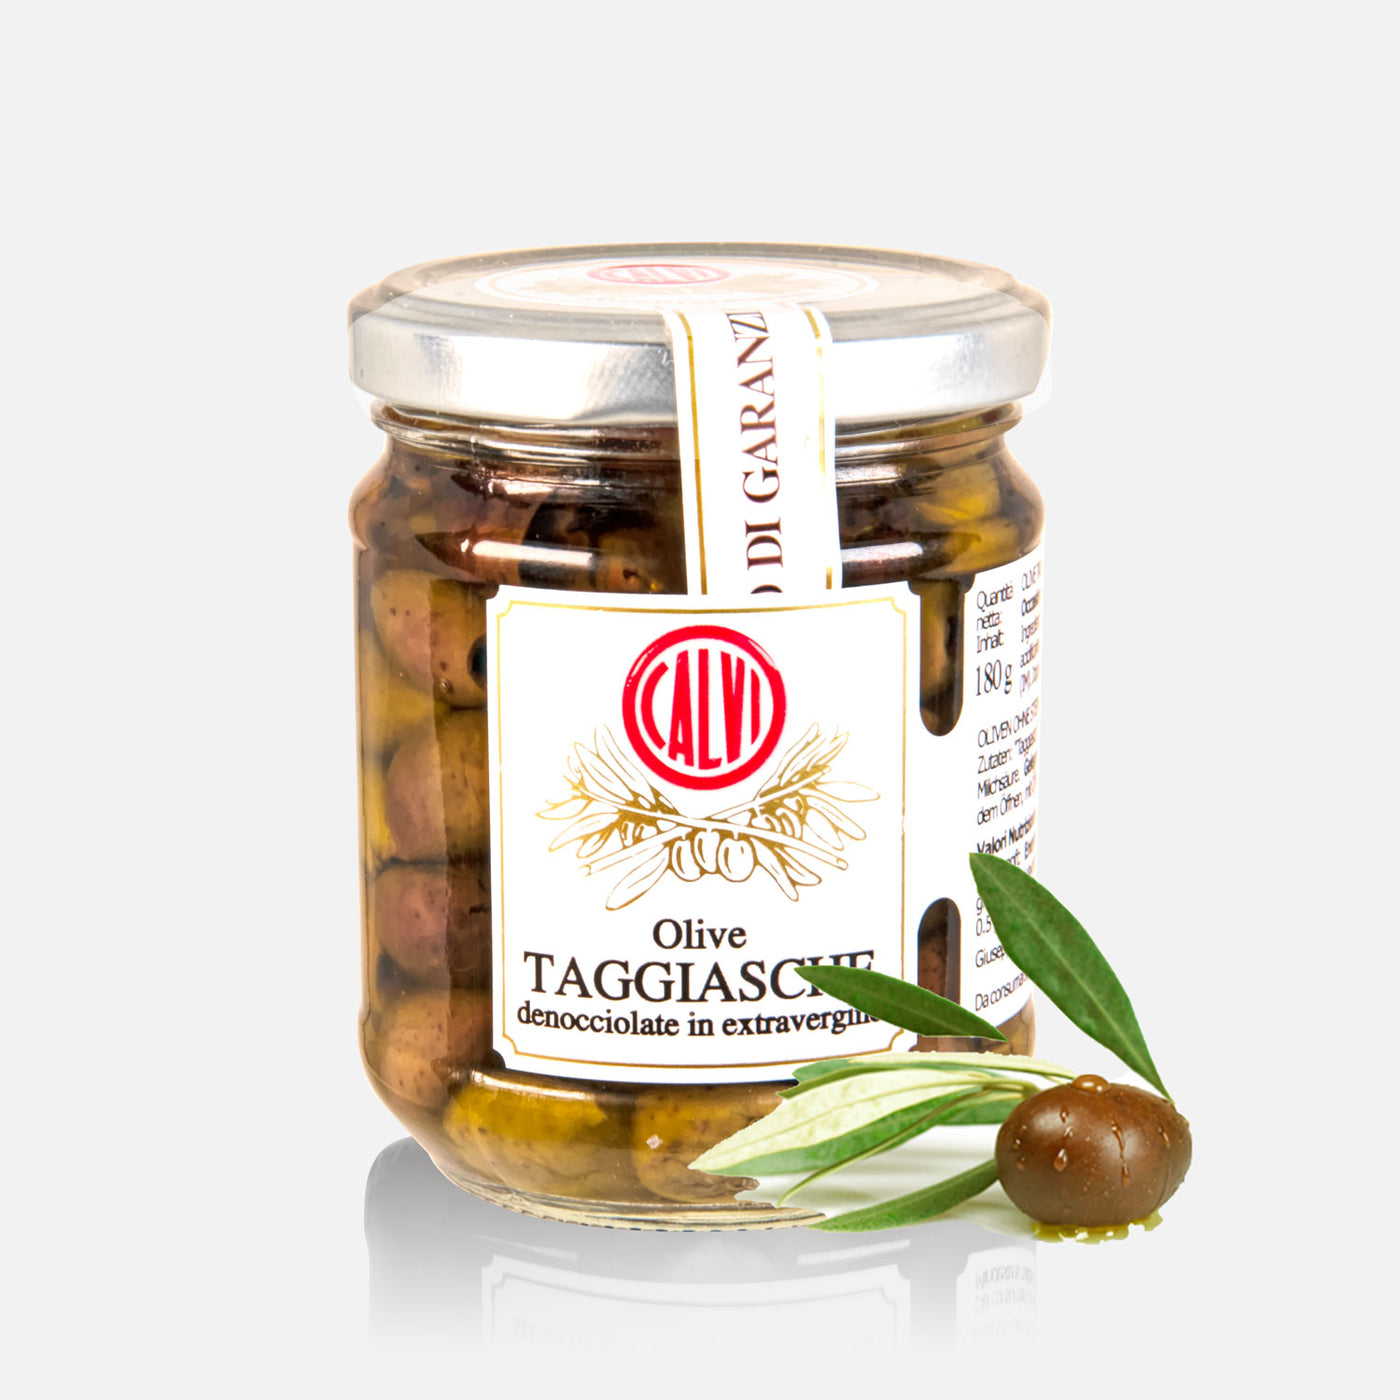 Taggiasca olives without stone in EVO oil - Frantoio Calvi Liguria